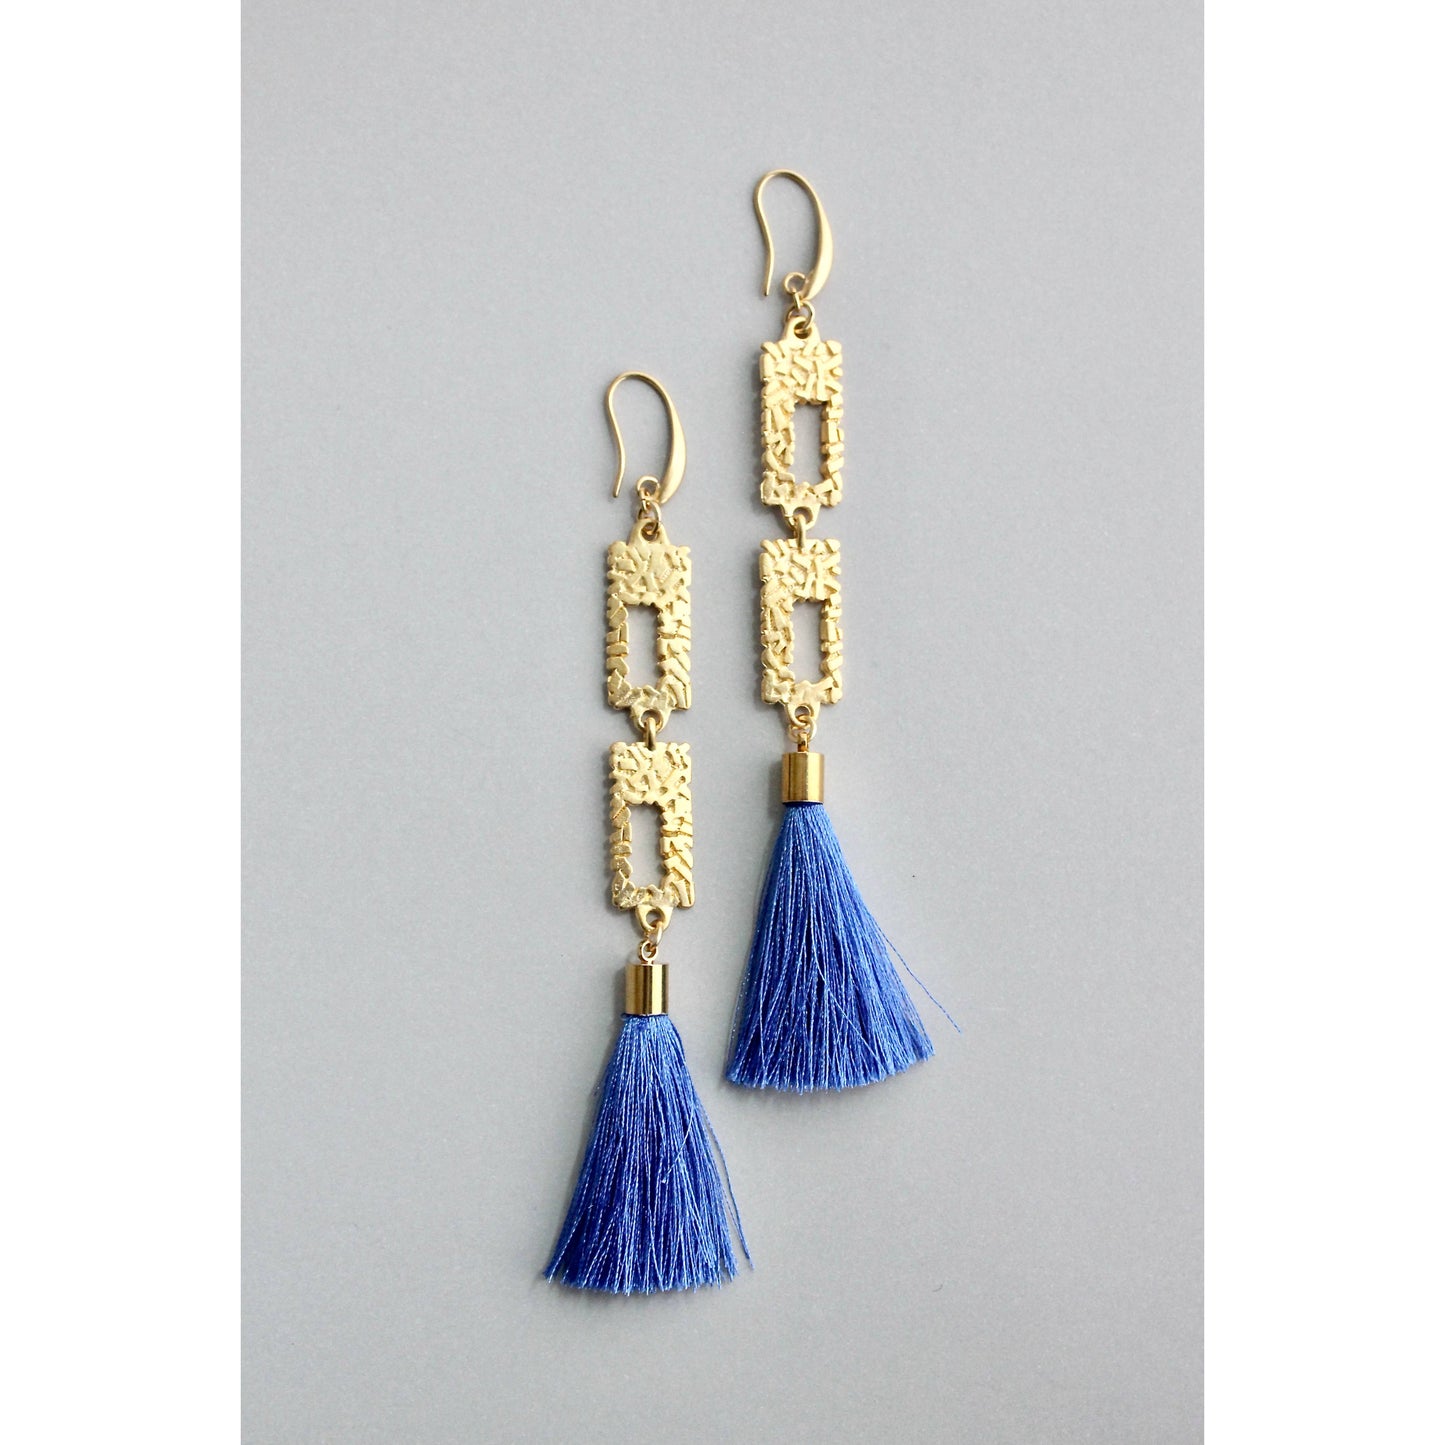 GNDE125E gold and blue tassel earrings